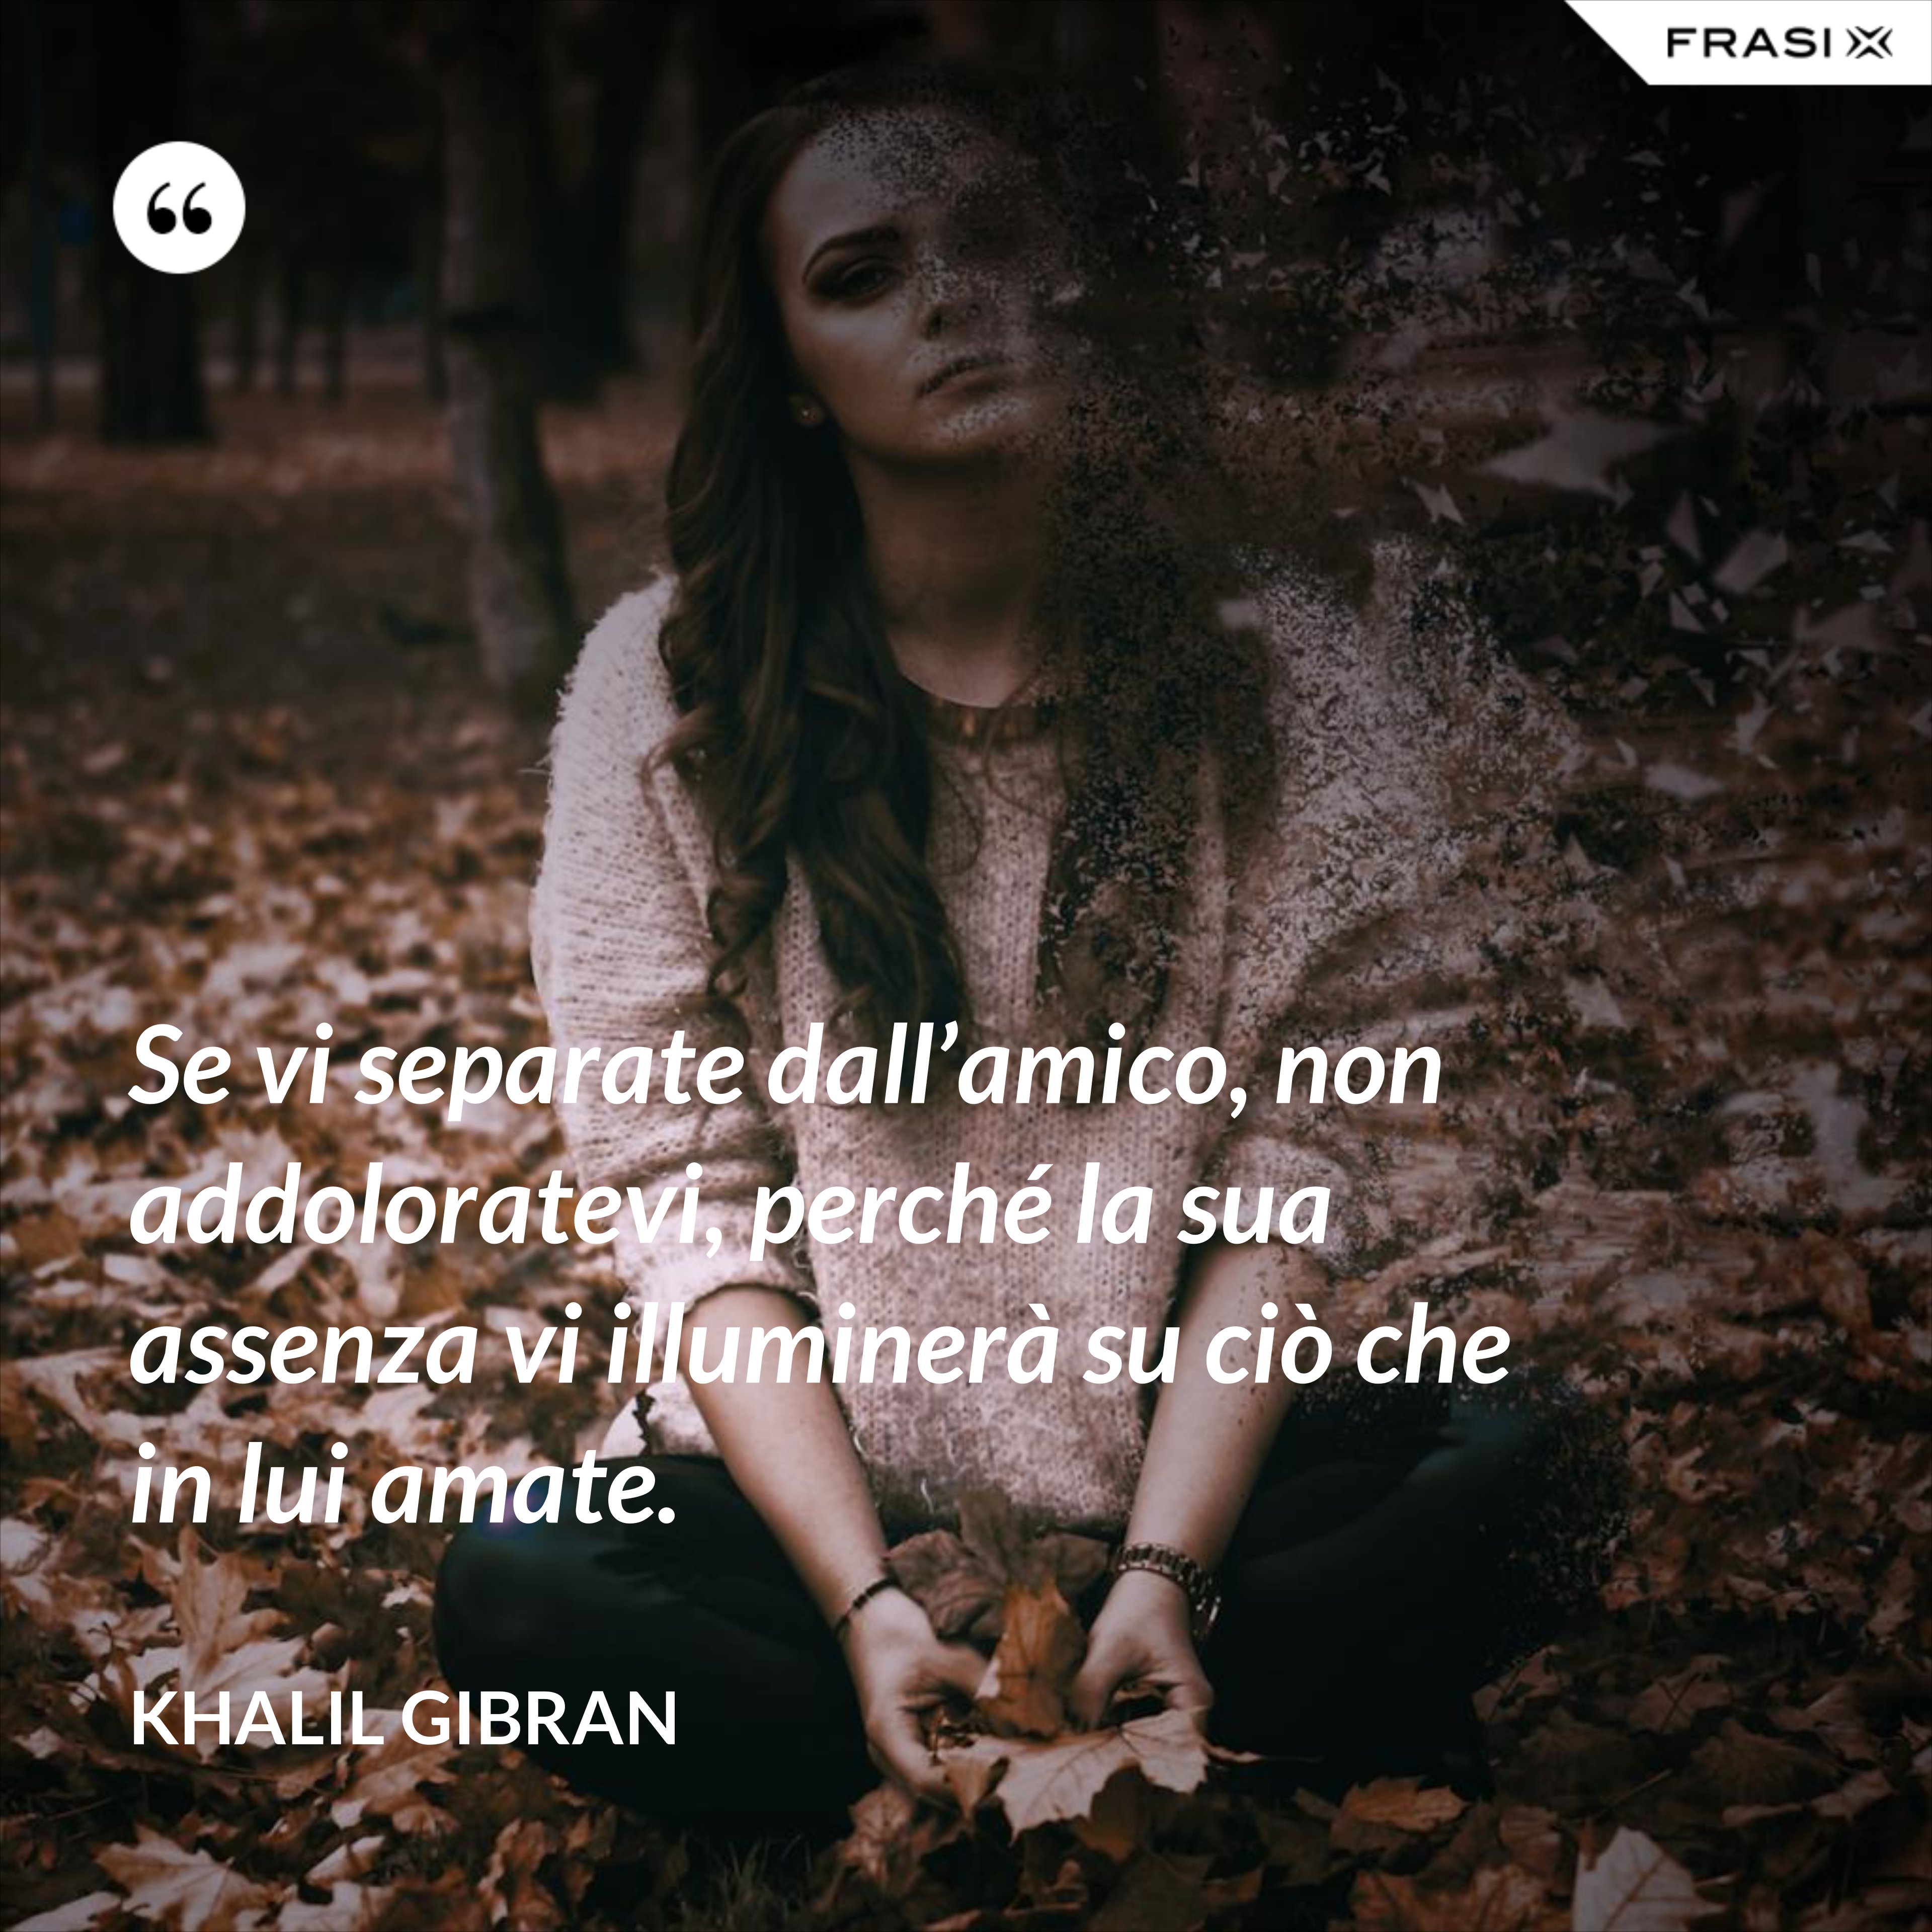 Se vi separate dall’amico, non addoloratevi, perché la sua assenza vi illuminerà su ciò che in lui amate. - Khalil Gibran